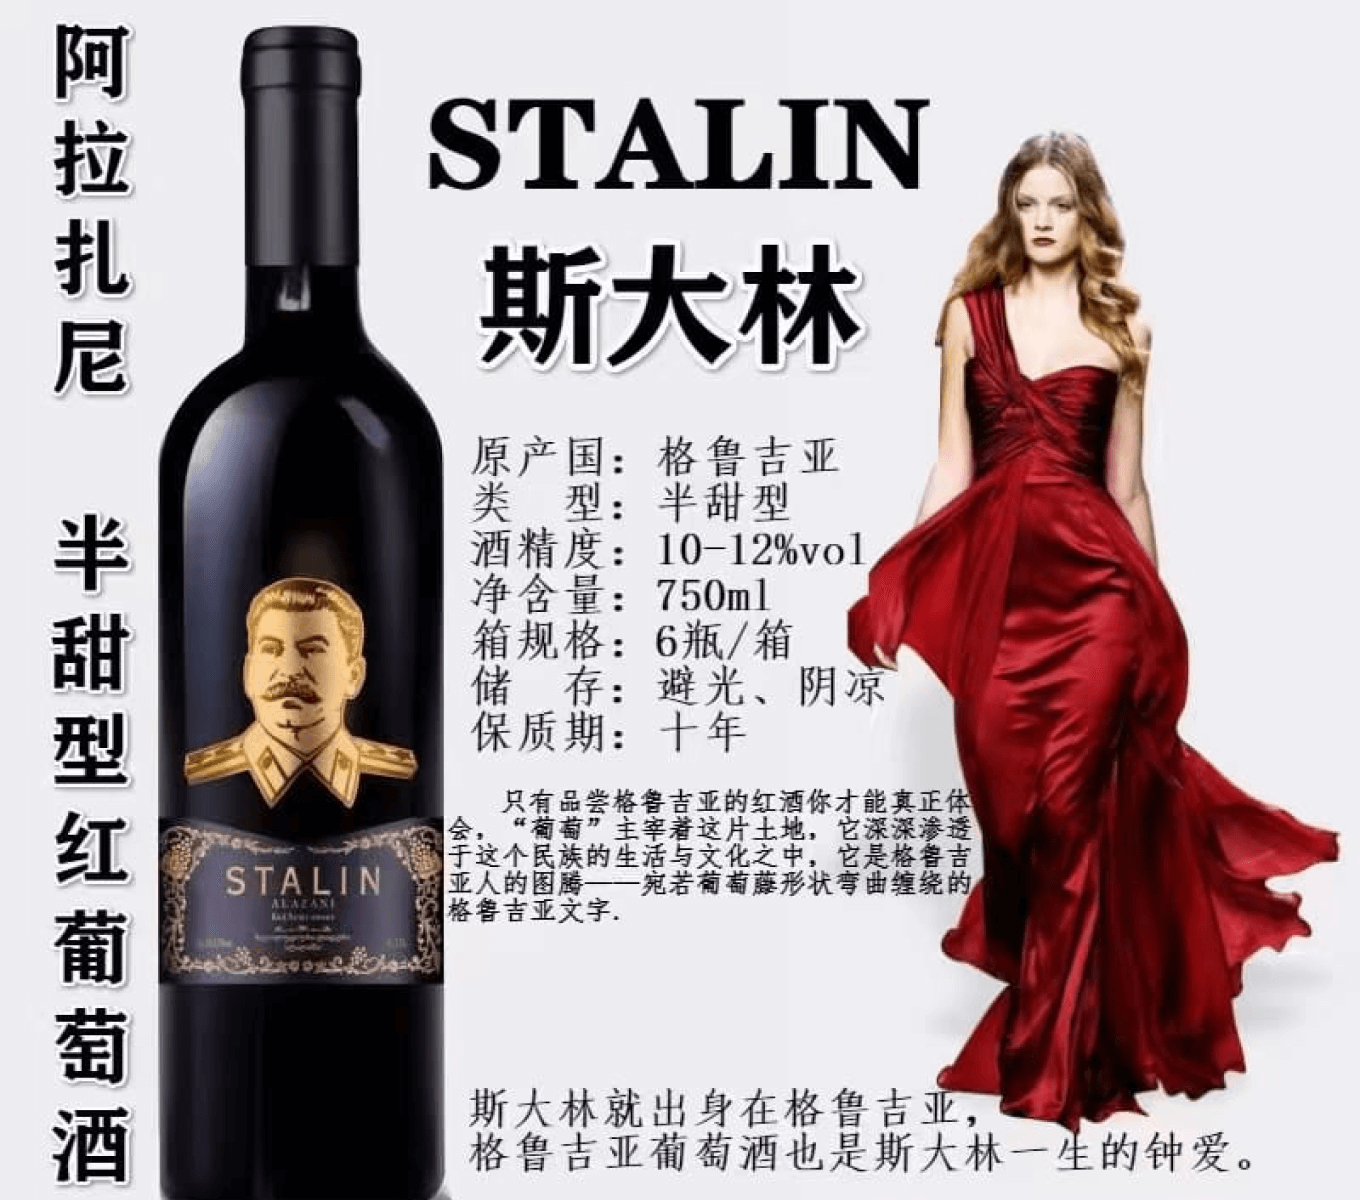 Алкогольная продукция с портретом Сталина в Китае